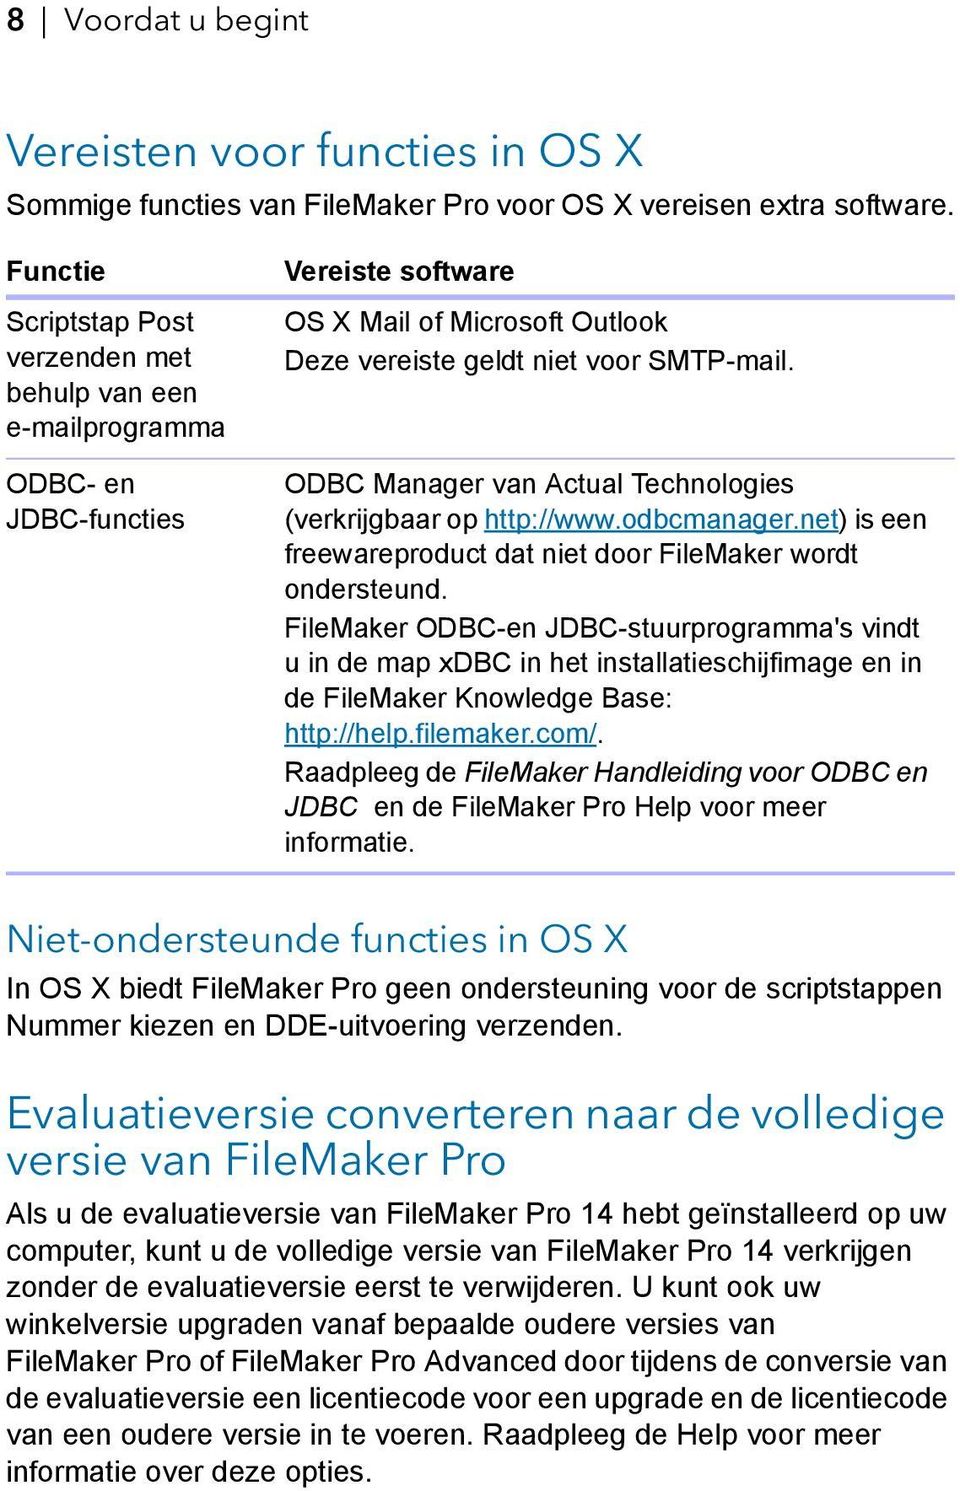 ODBC Manager van Actual Technologies (verkrijgbaar op http://www.odbcmanager.net) is een freewareproduct dat niet door FileMaker wordt ondersteund.